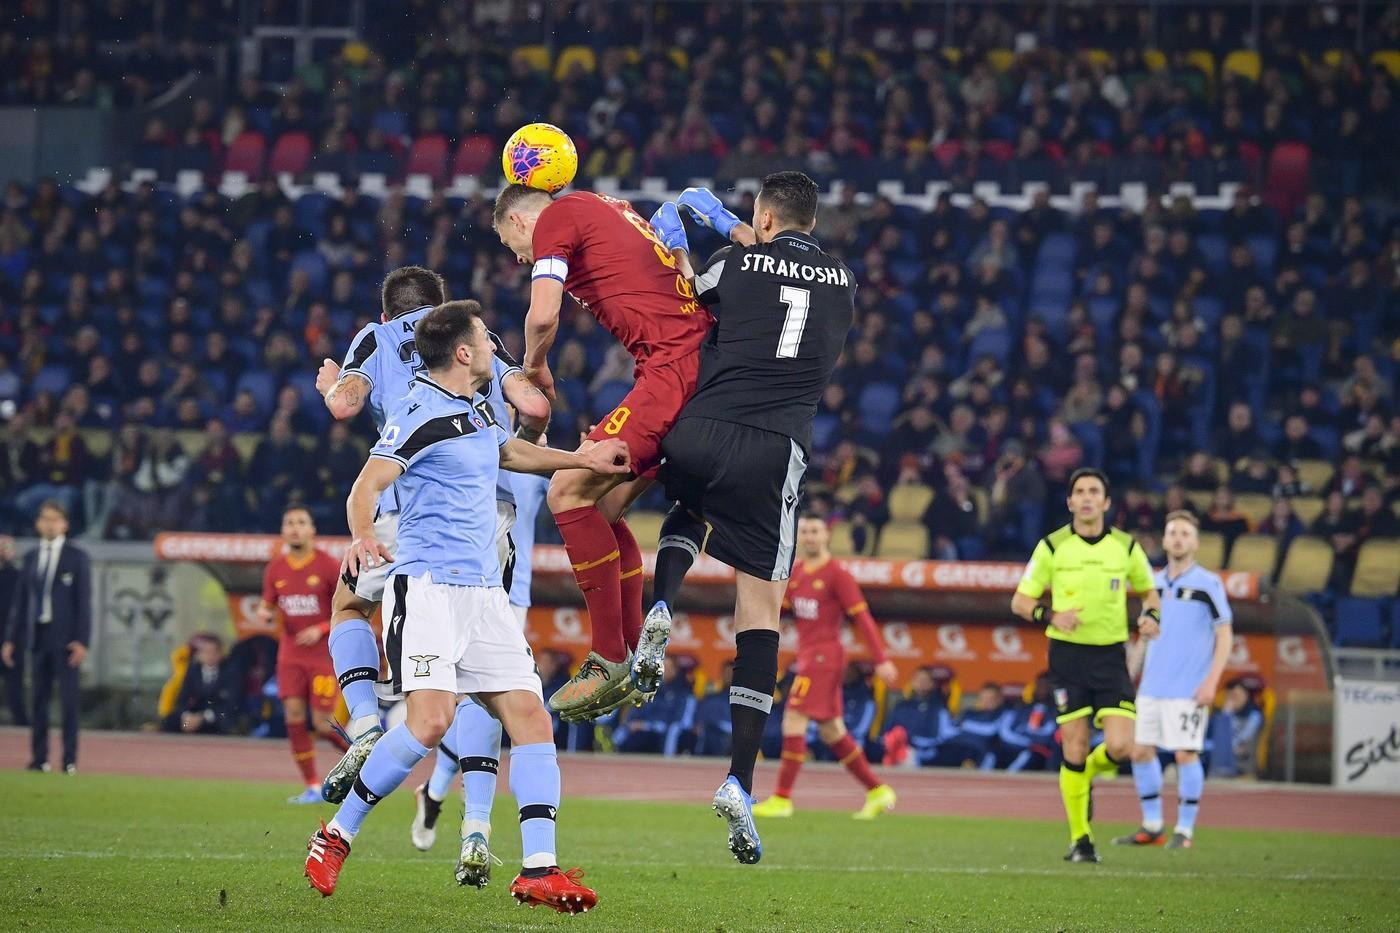 Questo è l’ultimo gol segnato alla Lazio nel derby: è di Dzeko, 26 gennaio 2020. La partita finirà 1-1, di LaPresse